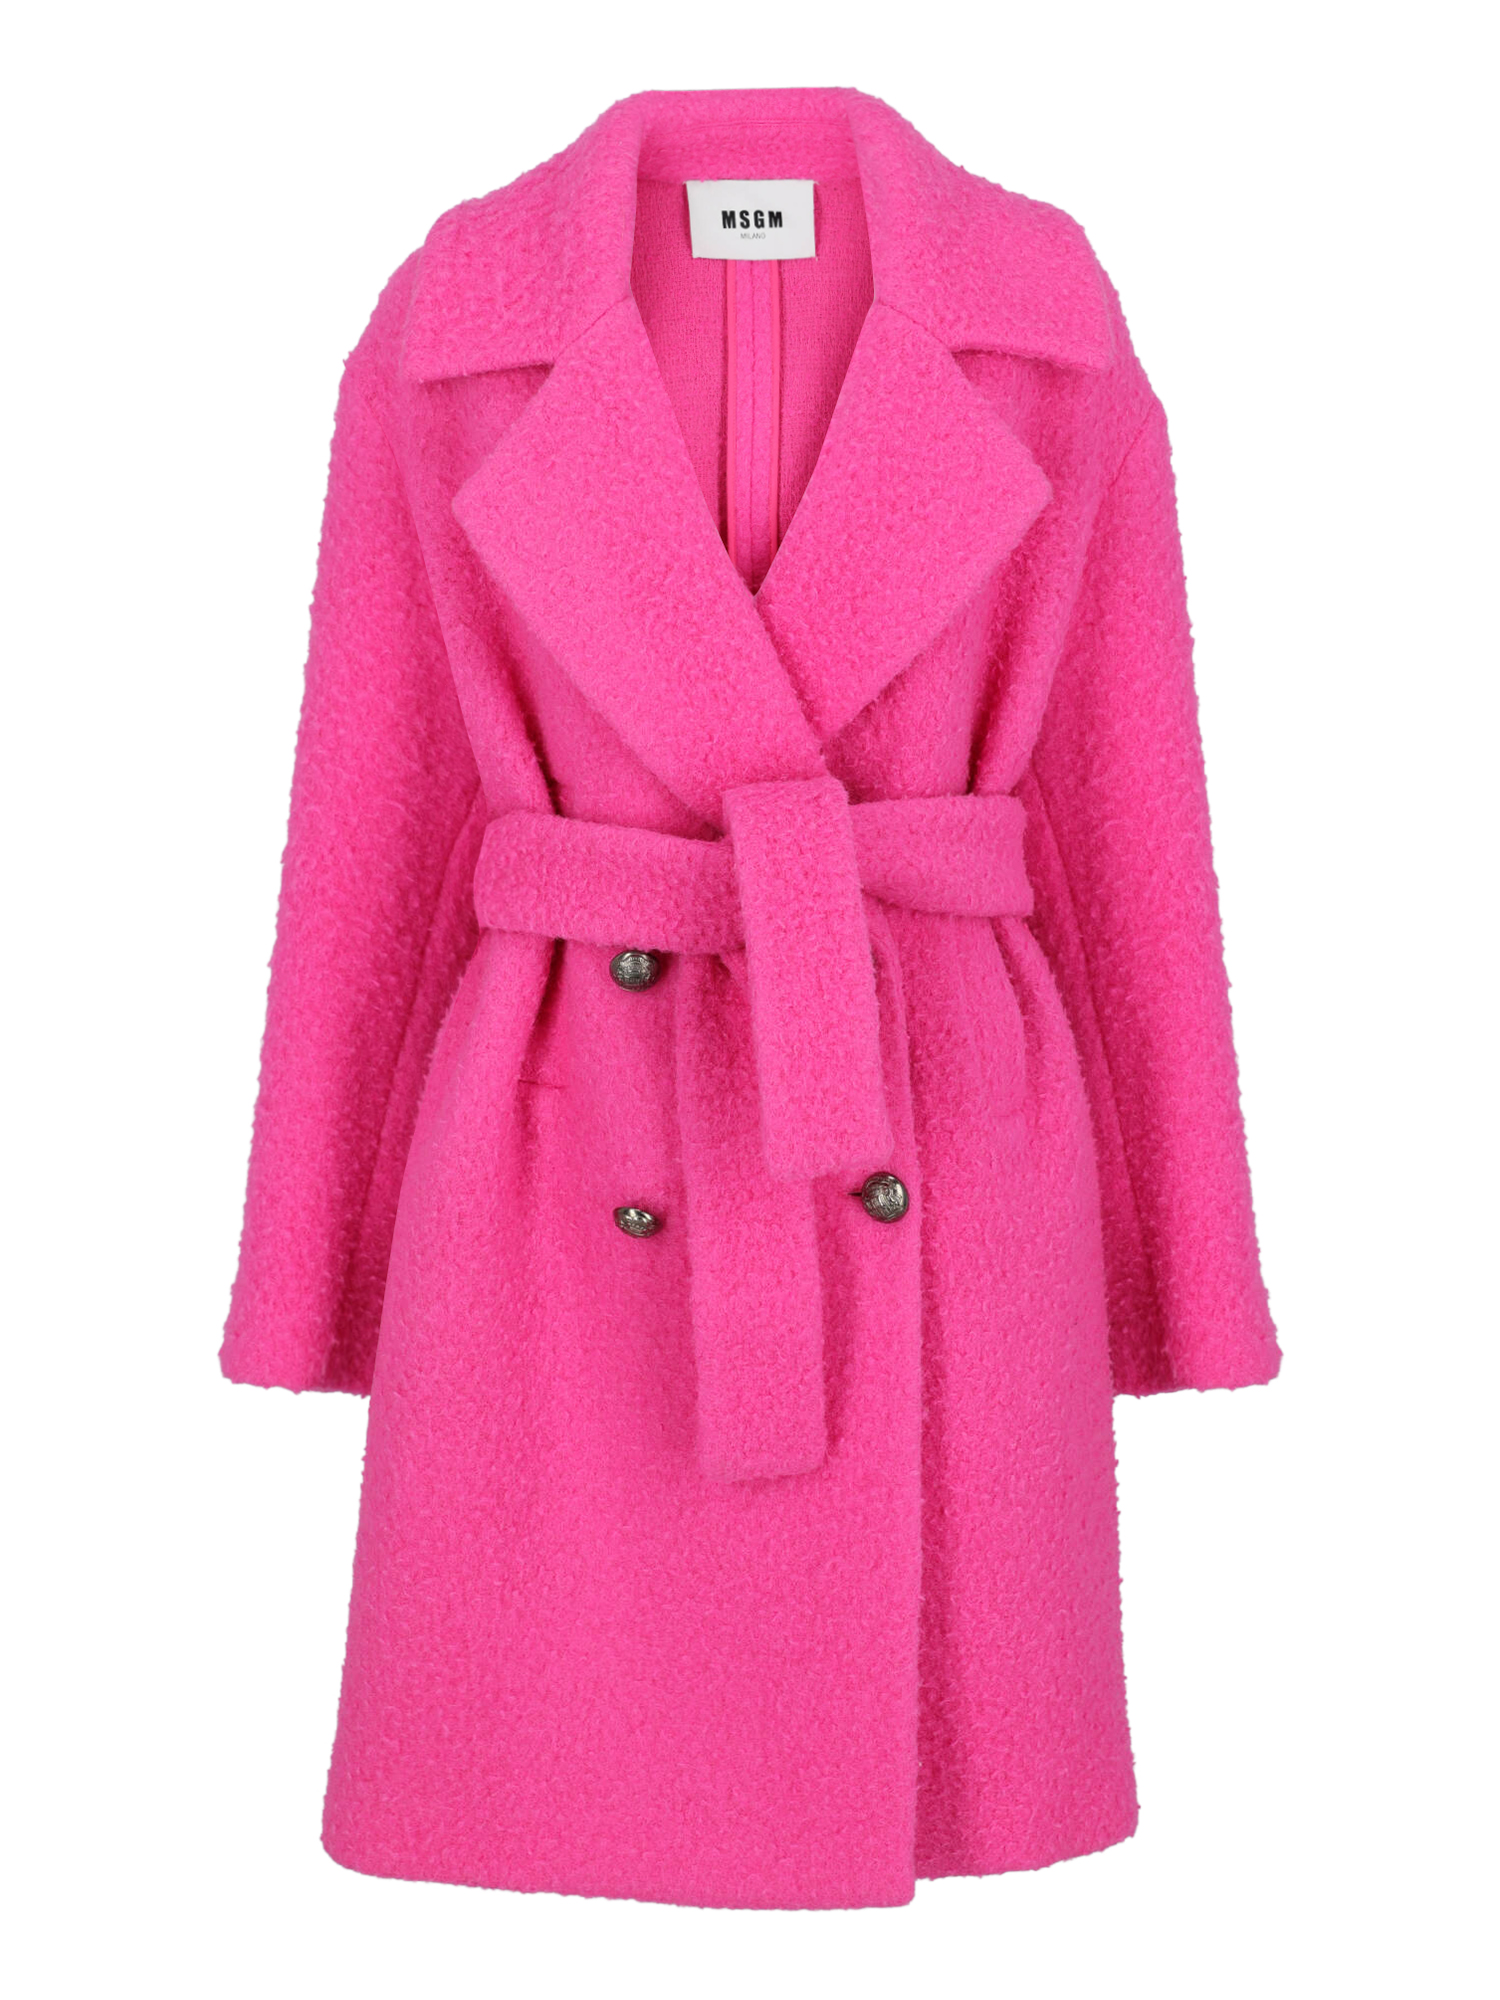 Manteaux Et Blousons Pour Femme - Msgm - En Wool Pink - Taille:  -